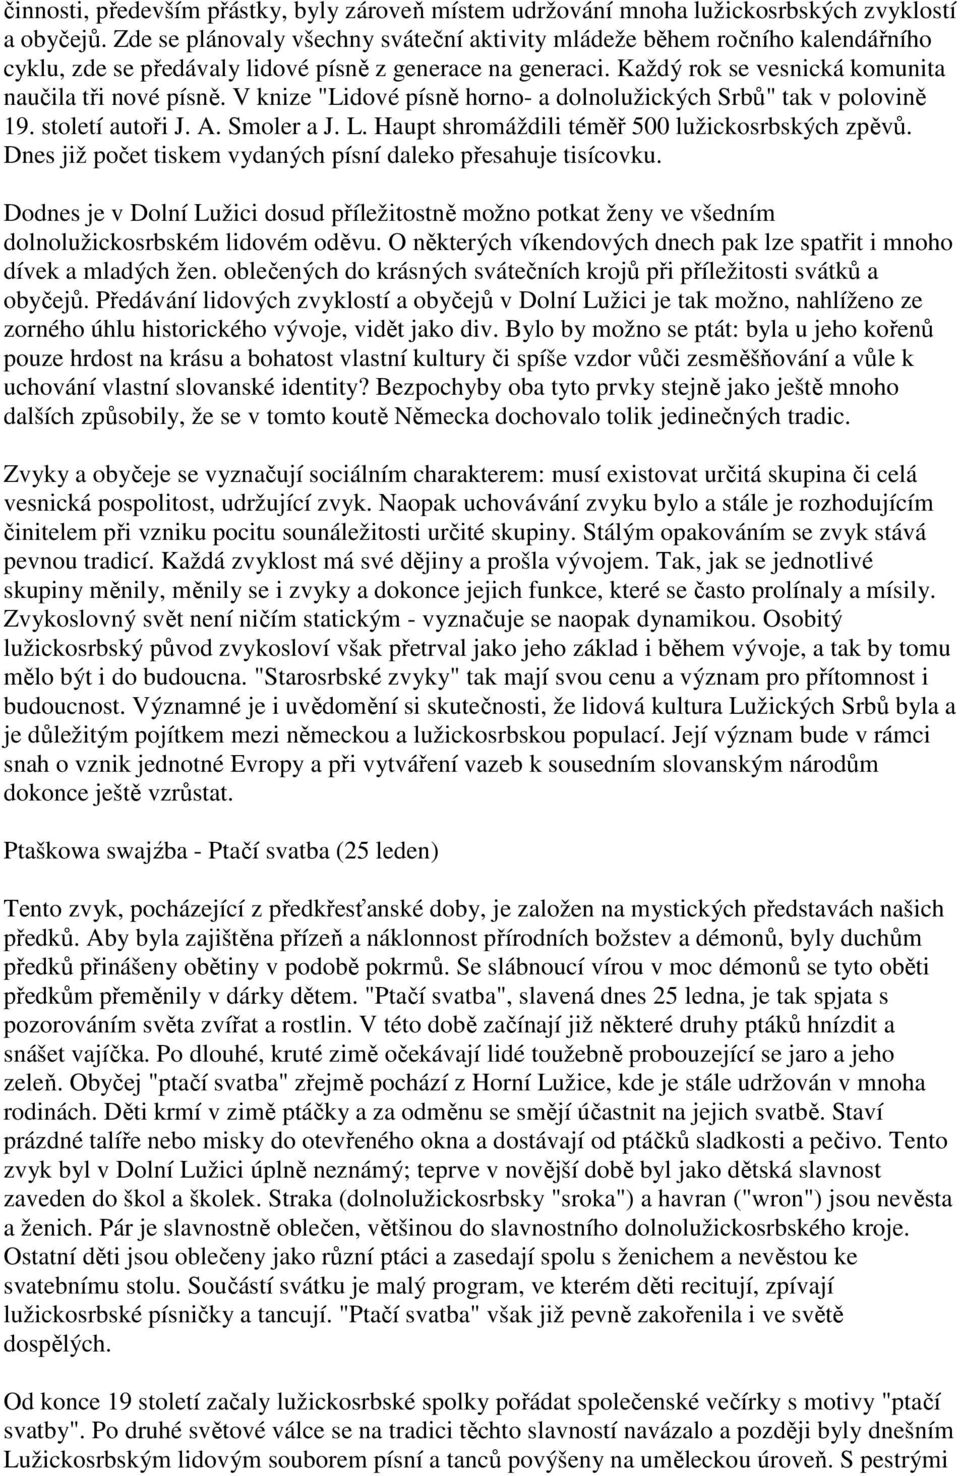 V knize "Lidové písně horno- a dolnolužických Srbů" tak v polovině 19. století autoři J. A. Smoler a J. L. Haupt shromáždili téměř 500 lužickosrbských zpěvů.